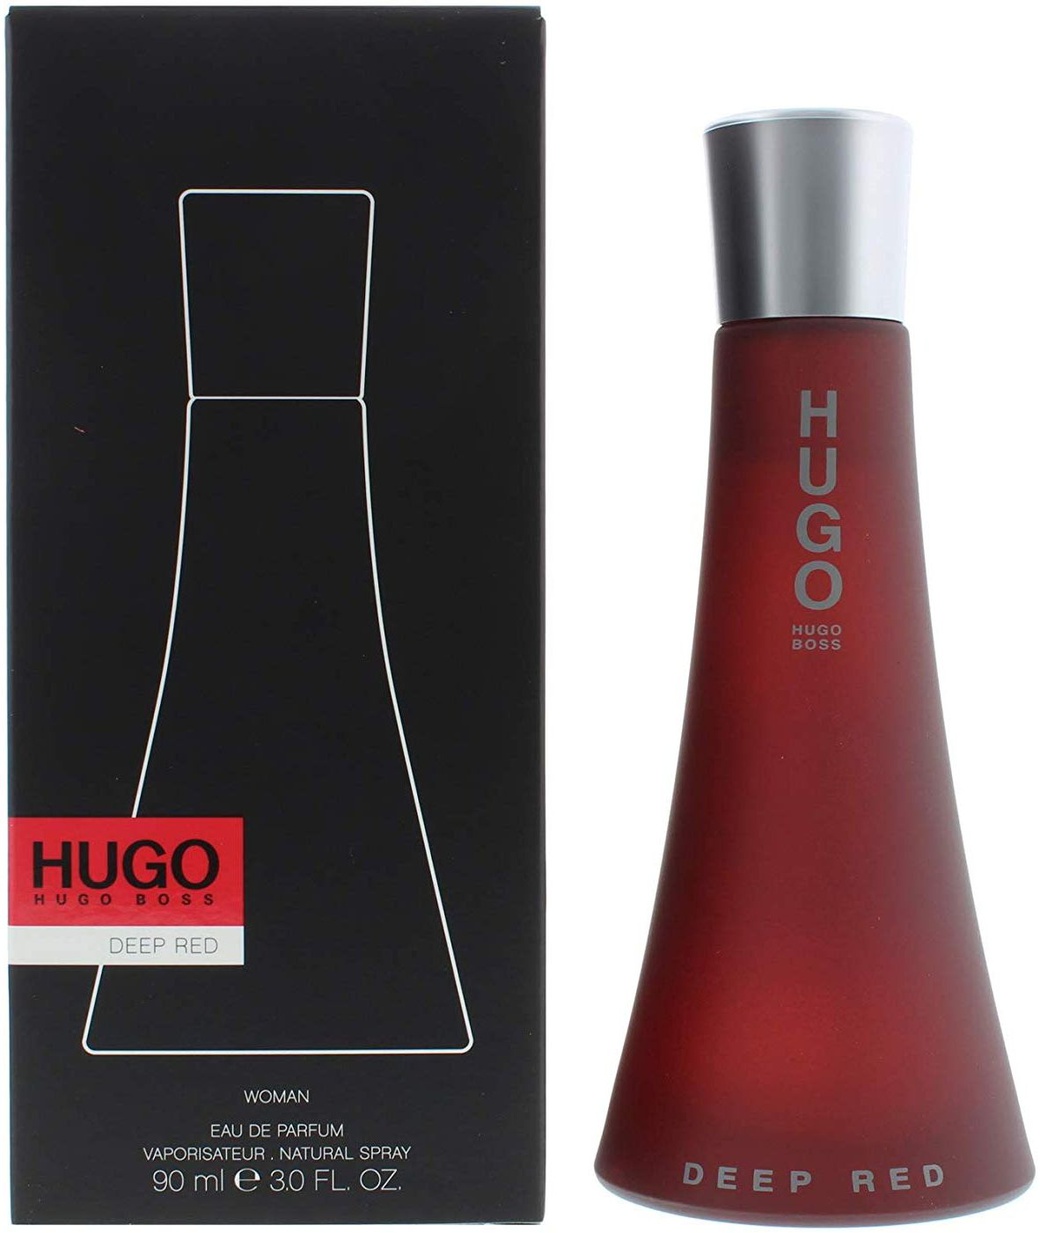 Хьюго босс дип. Хьюго босс дип ред. Deep Red (Hugo Boss) 100мл. Hugo Boss Deep Red EDP (50 мл). Духи Hugo Boss Deep Red женские.